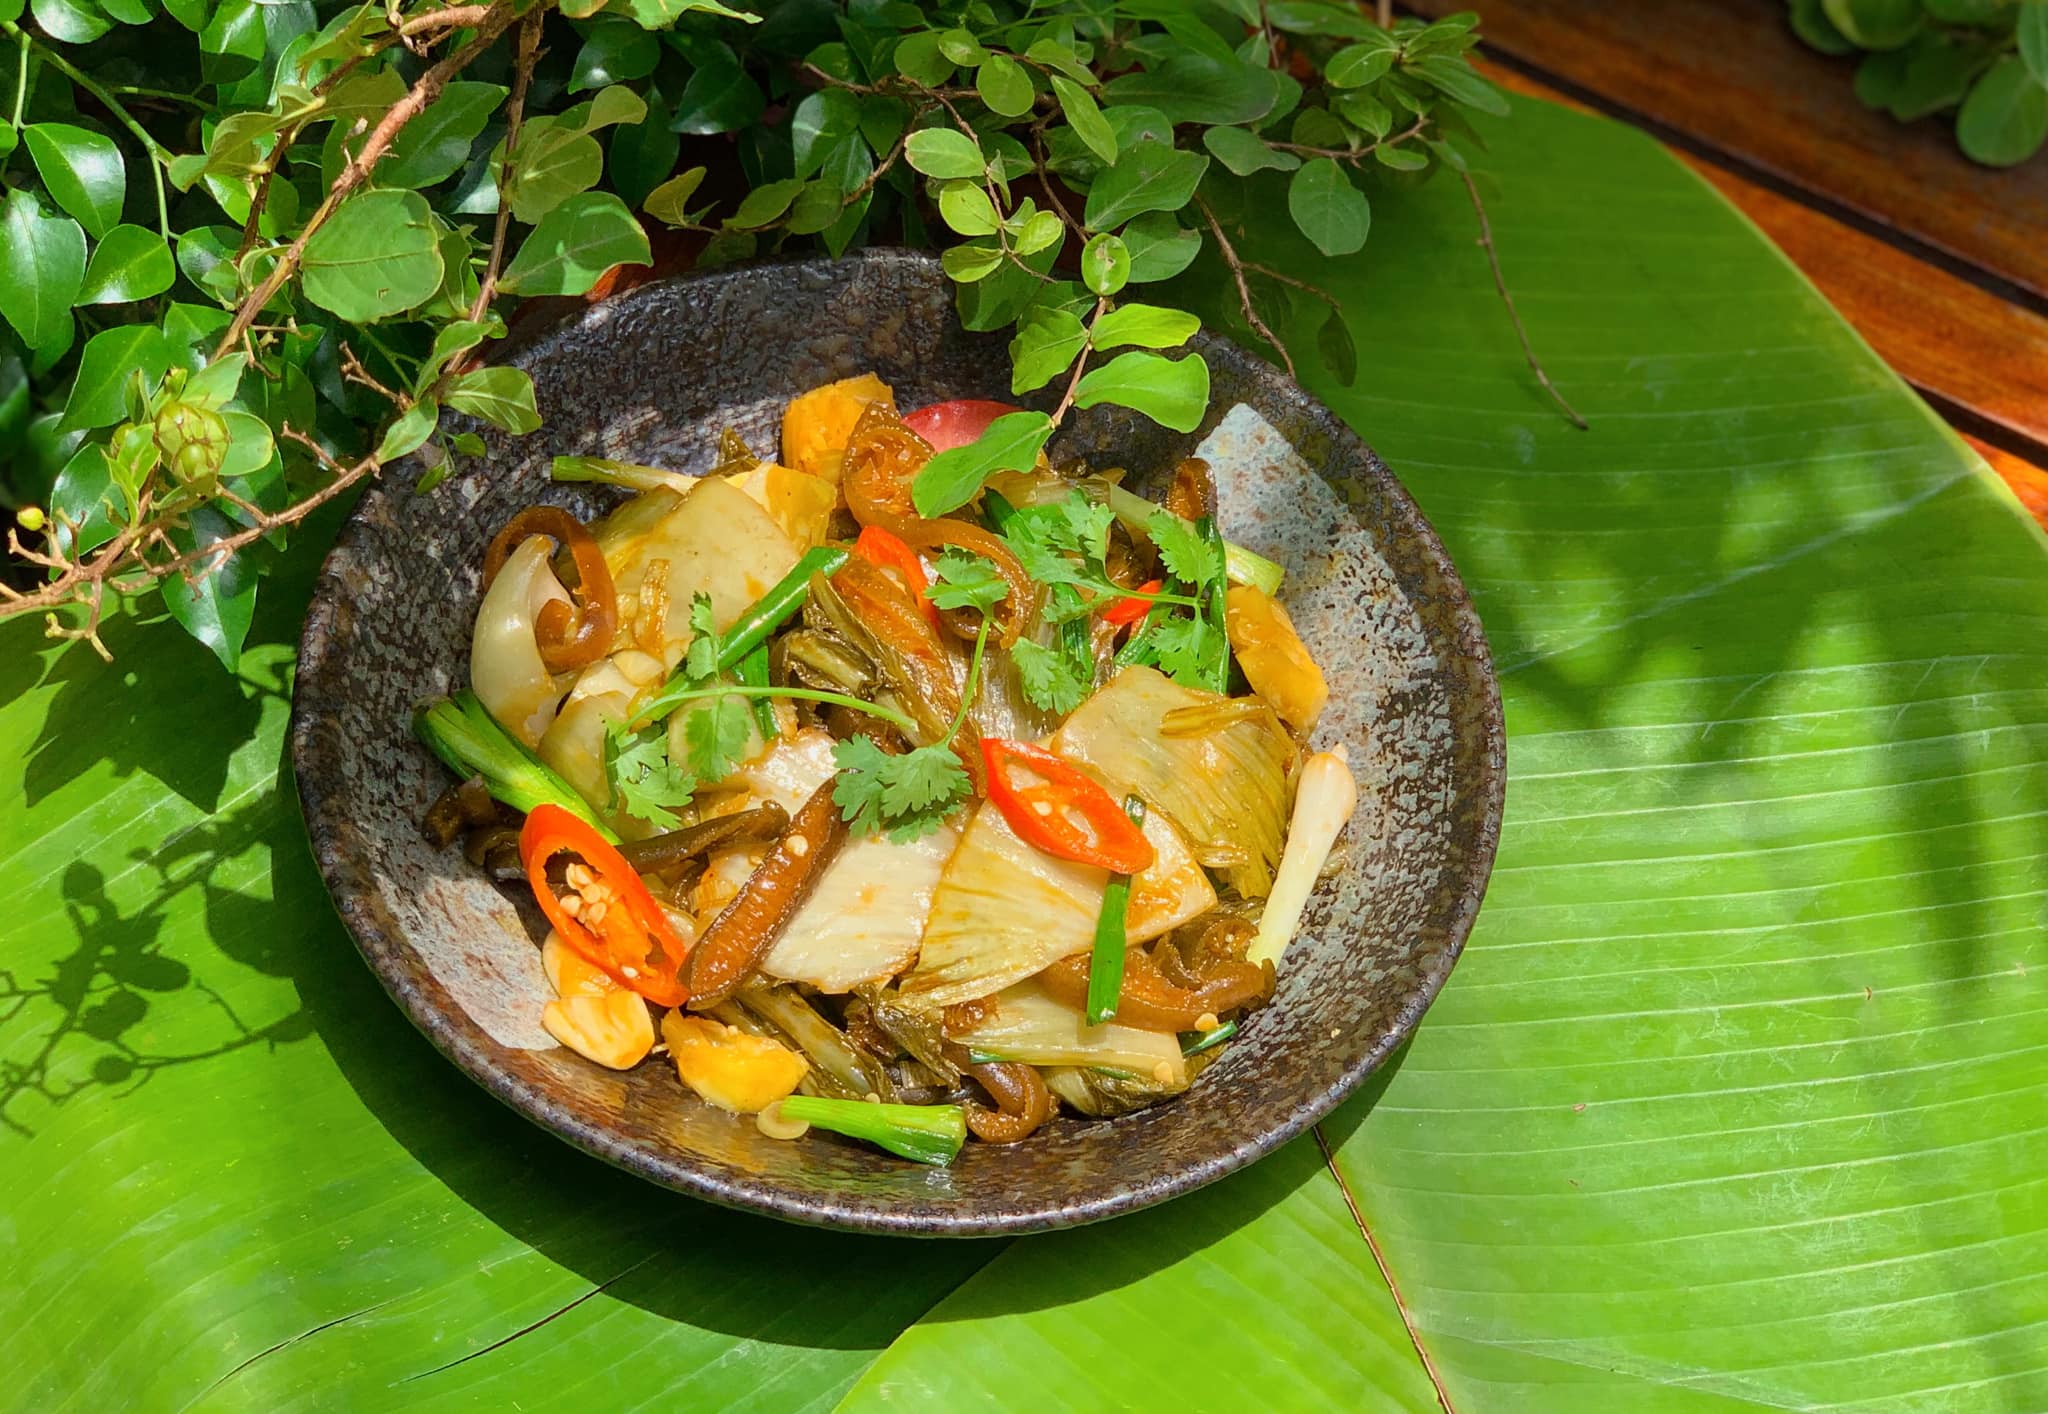 Nhà hàng nổi tiếng Phương Mai với ẩm thực chay sáng tạo, khi mỗi món ăn không chỉ là đơn giản là thức ăn mà còn là tác phẩm nghệ thuật, tinh tế từ cách trình bày đến hương vị.